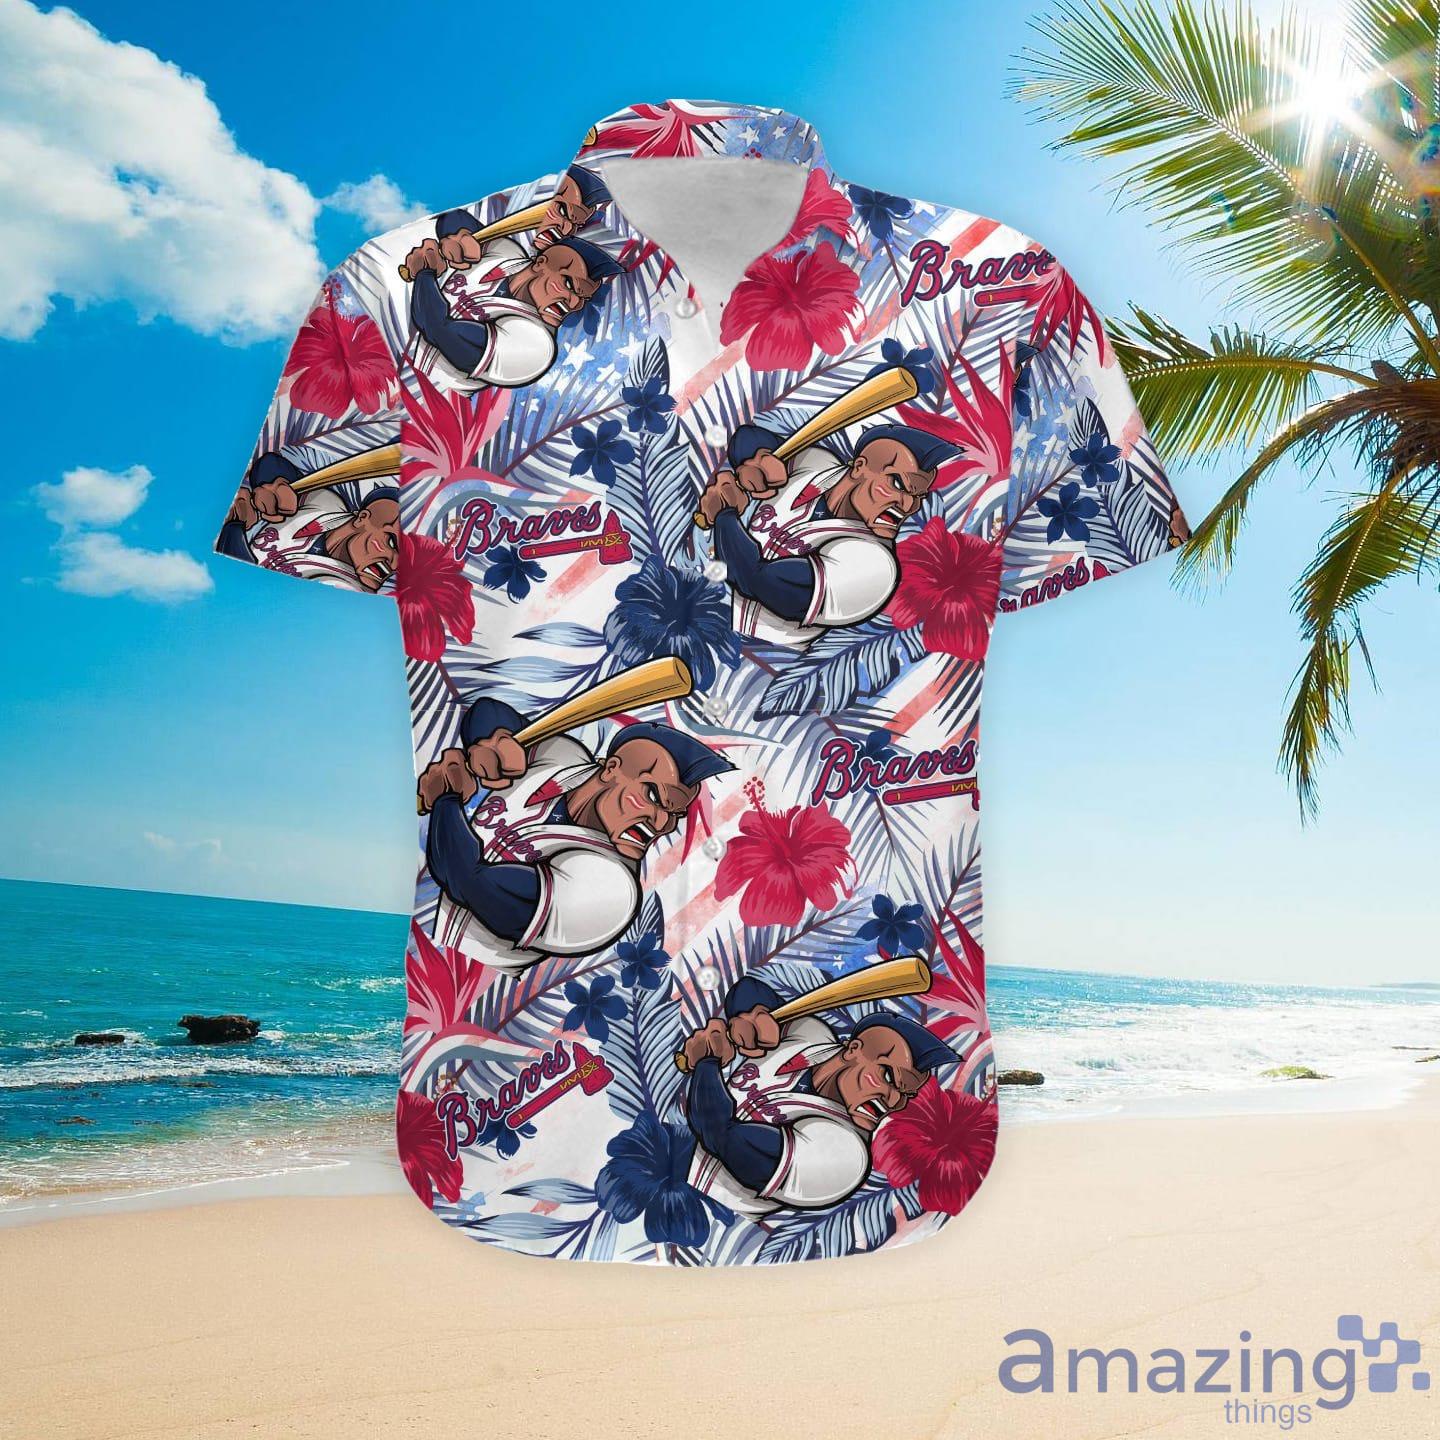 Atlanta Braves Baby Yoda Lover Tropical Style Hawaiian Shirt And Shorts -  Banantees